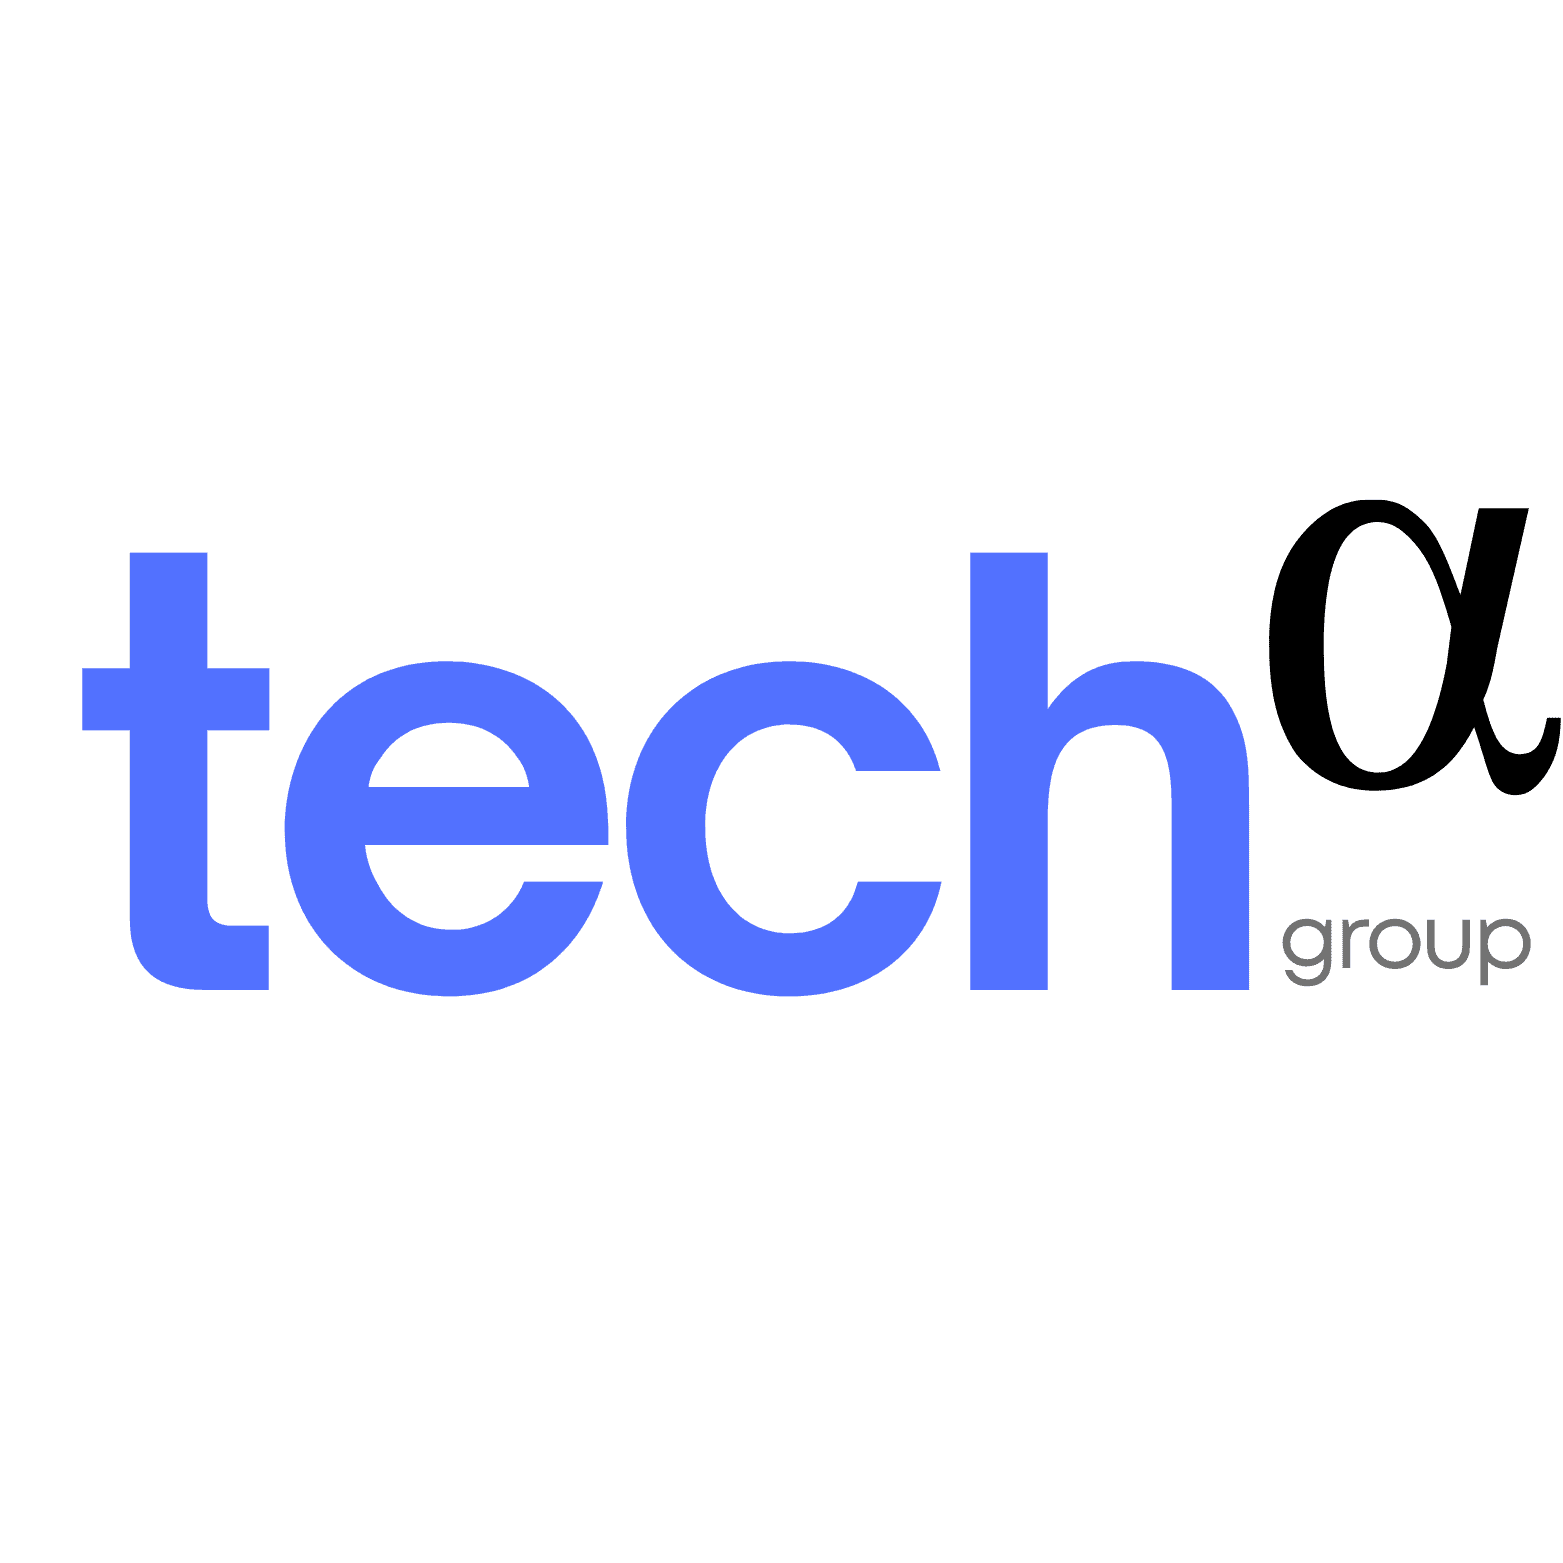 Home - Techalpha Group